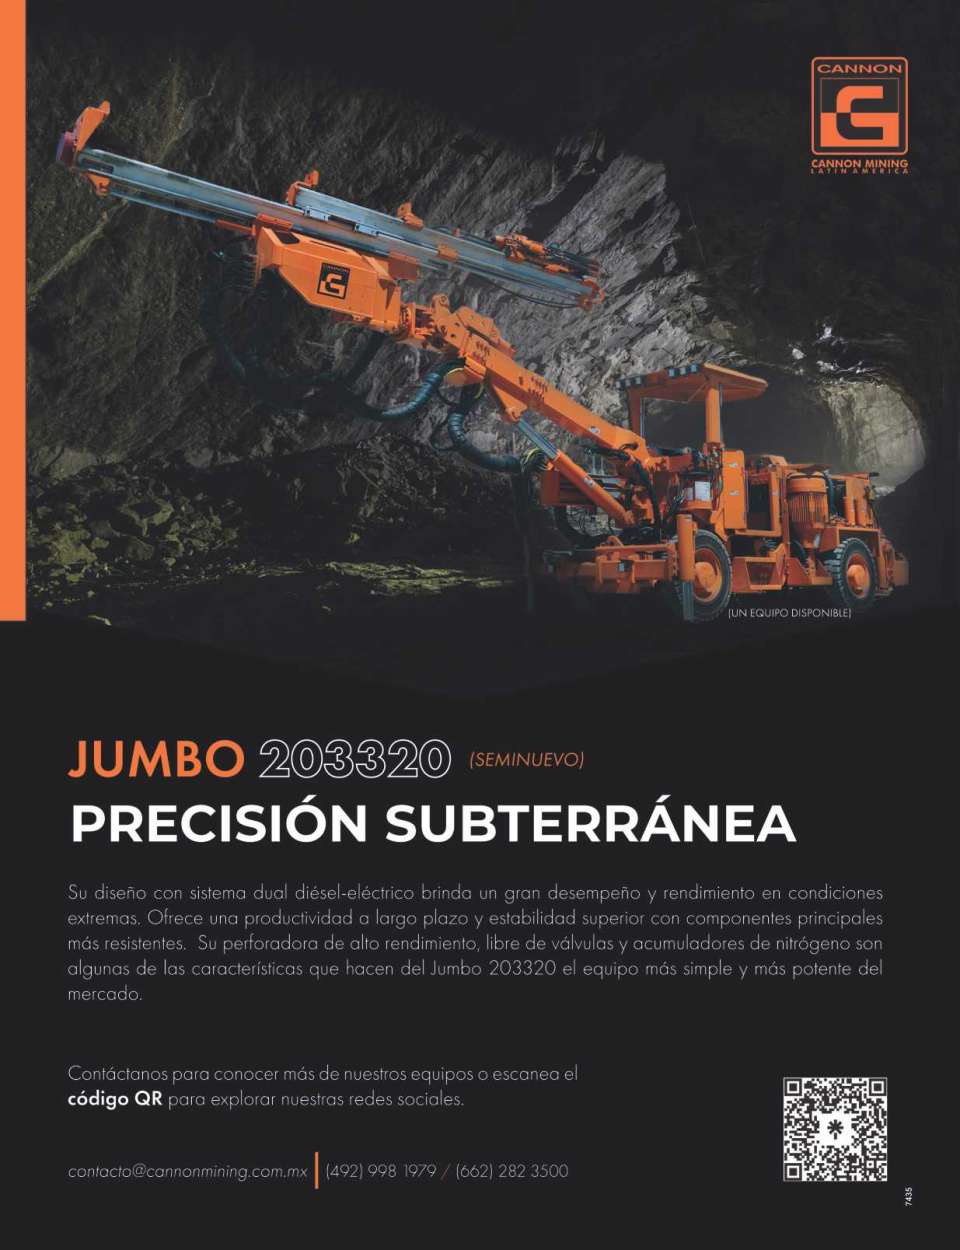 Jumbo 203320, precision subterranea, diseño con sistema dual diesel - electrico, productividad a largo plazo y estabilidad superior. Equipo Seminuevo